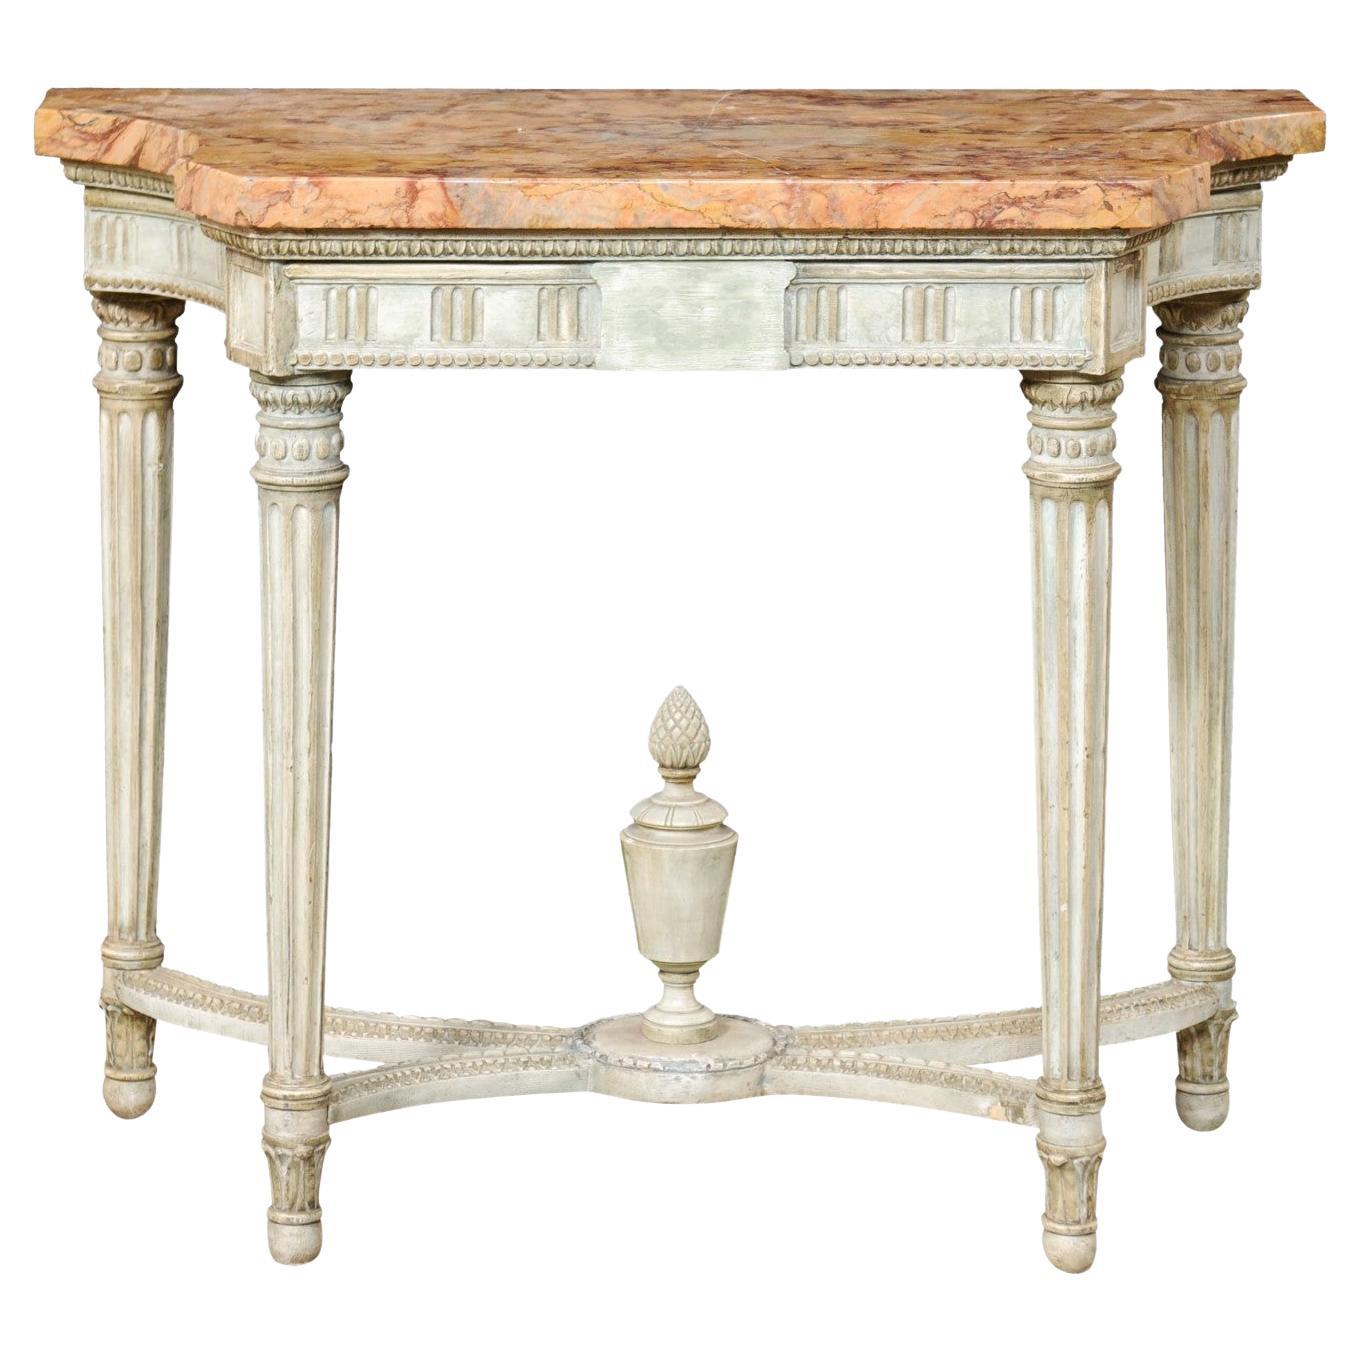 Console en marbre d'époque néoclassique française avec fleuron en forme d'urne sculptée sur le dessous